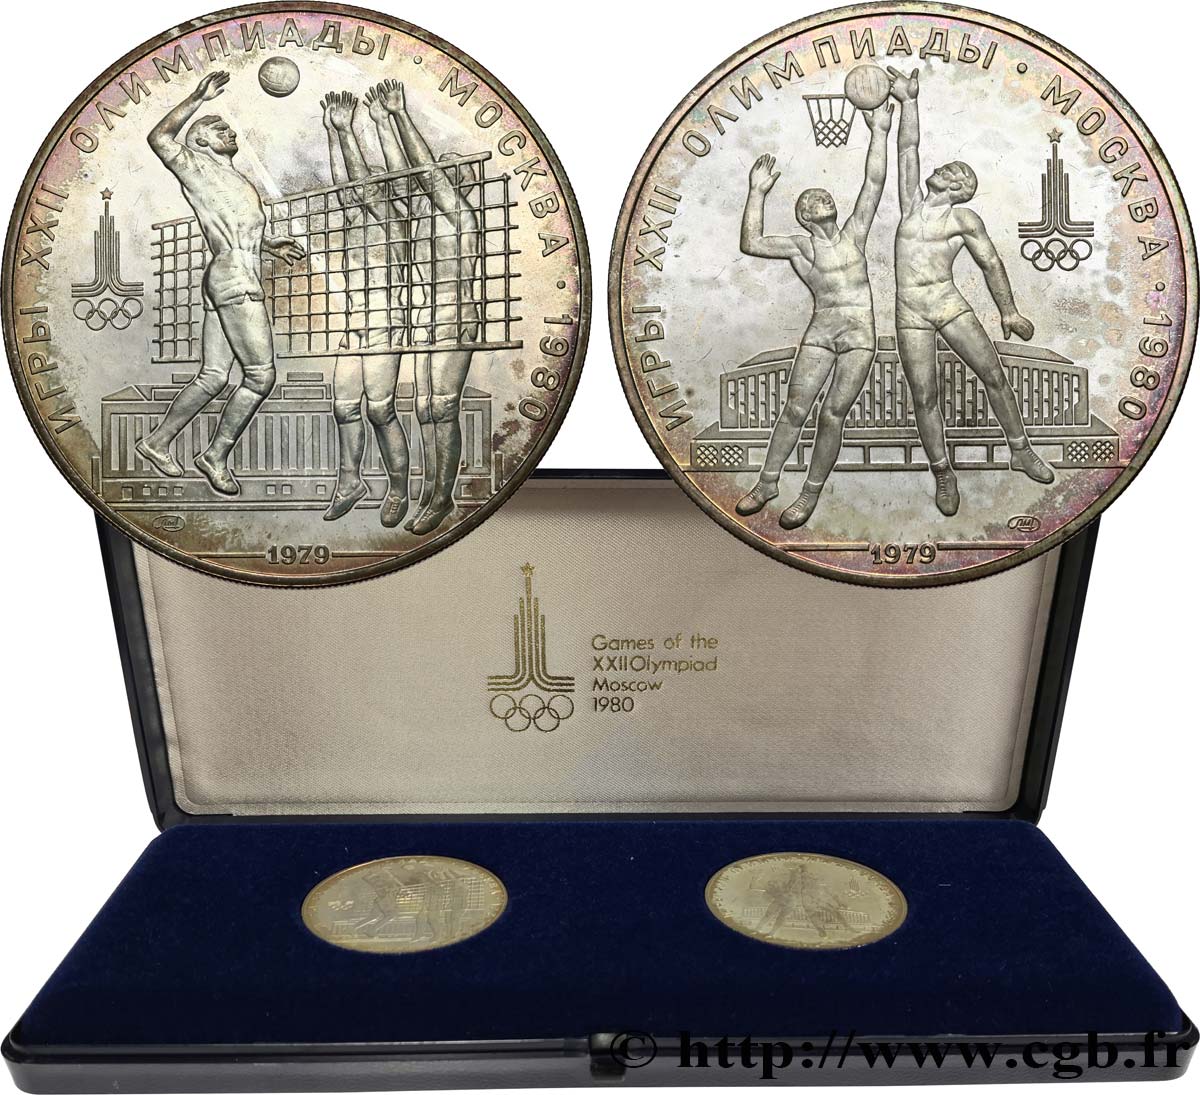 RUSSLAND - UdSSR Série 2 monnaies Jeux Olympiques de Moscou 1980 1979 Moscou fST 